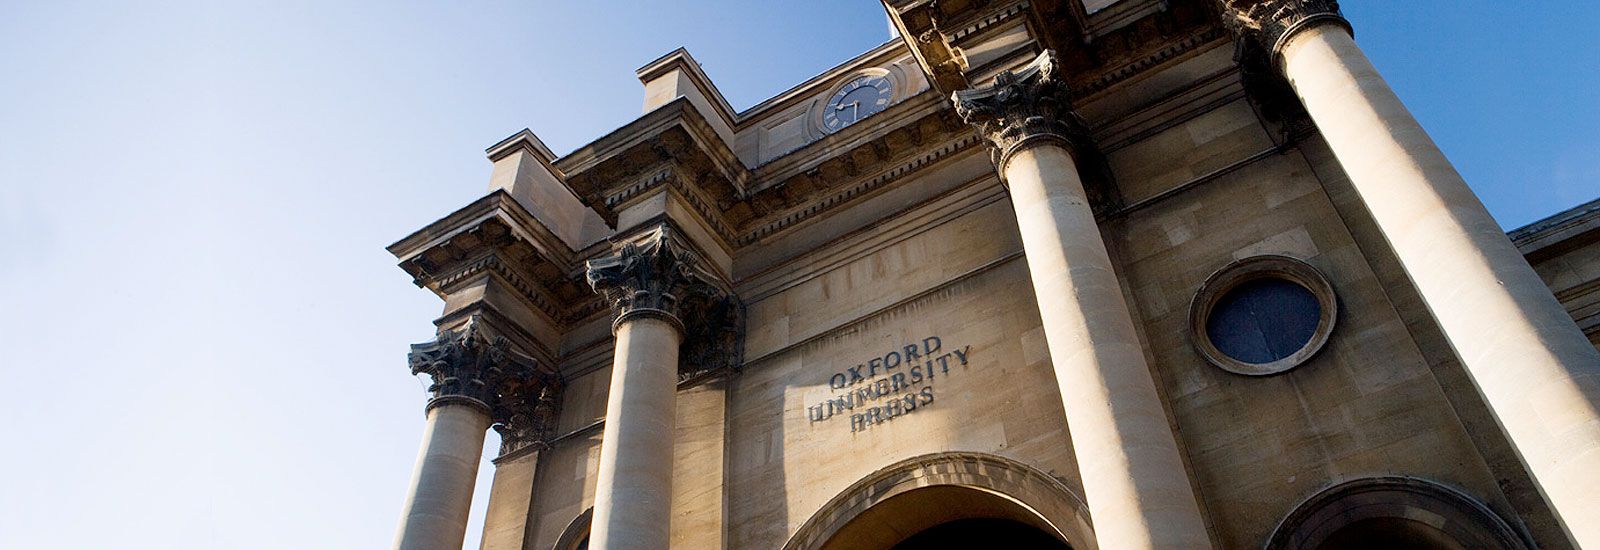 Oxford University Press facade